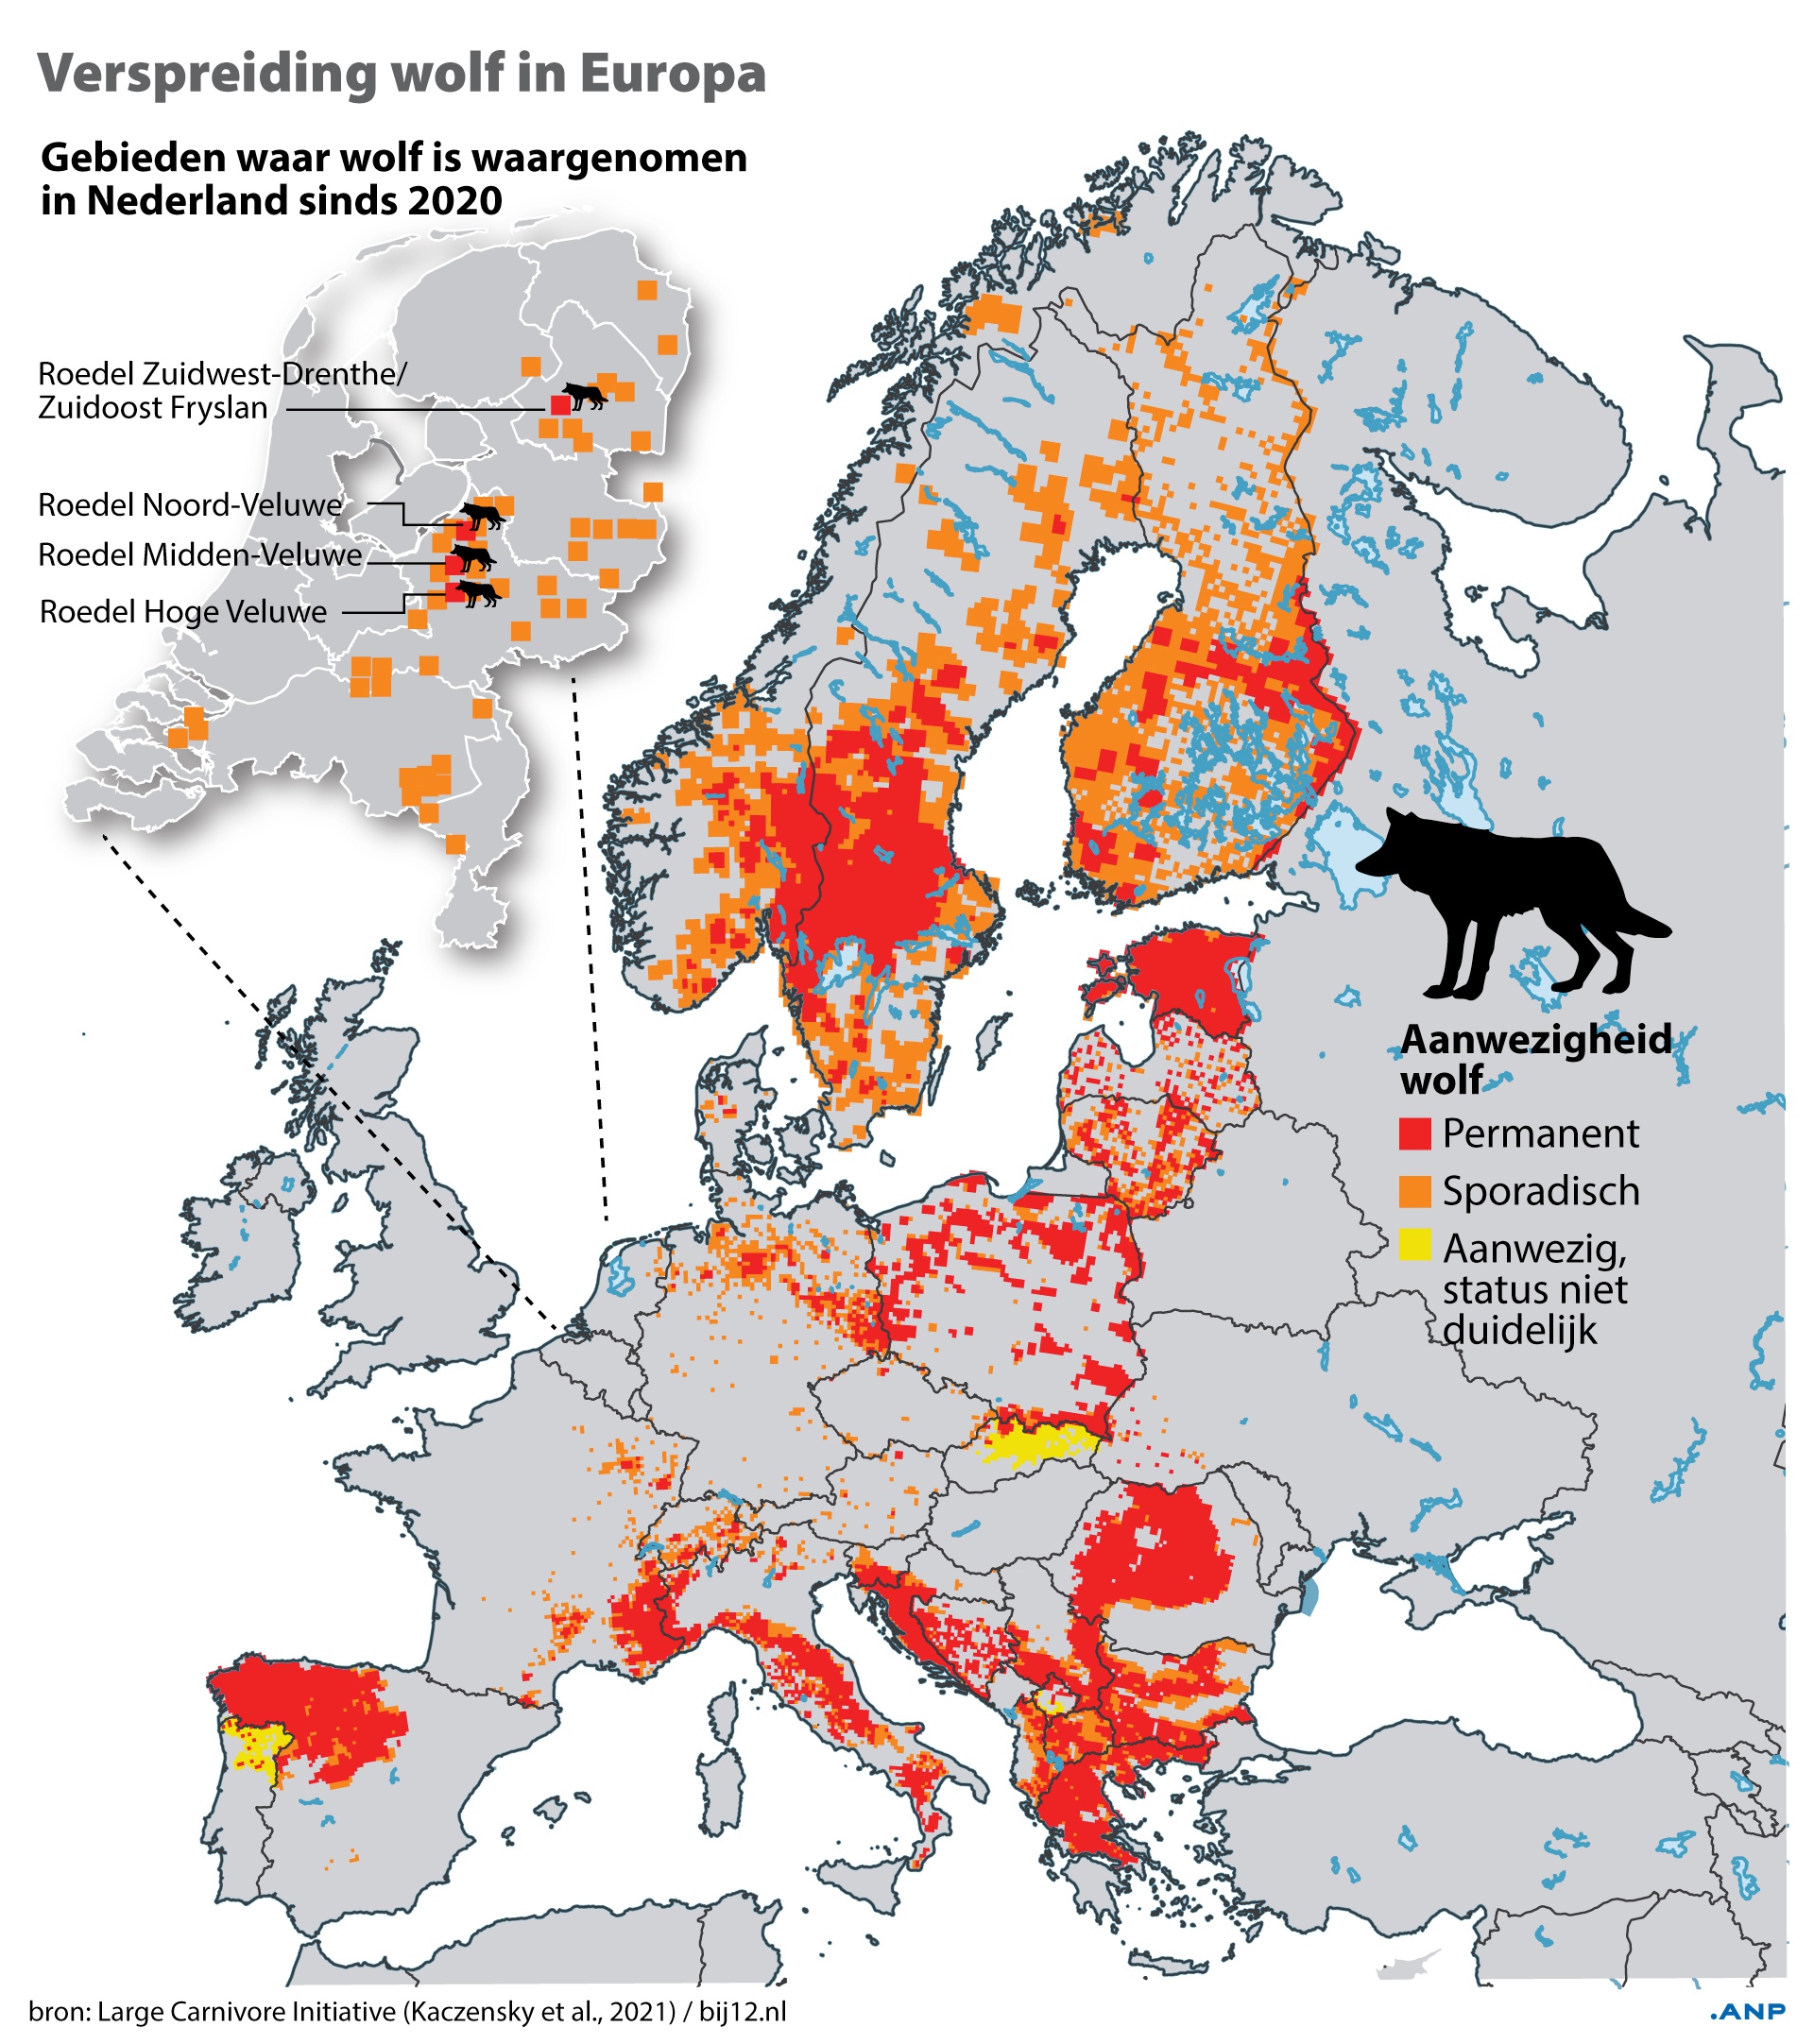 Verspreiding van de wolf in Europa. Bron: ANP